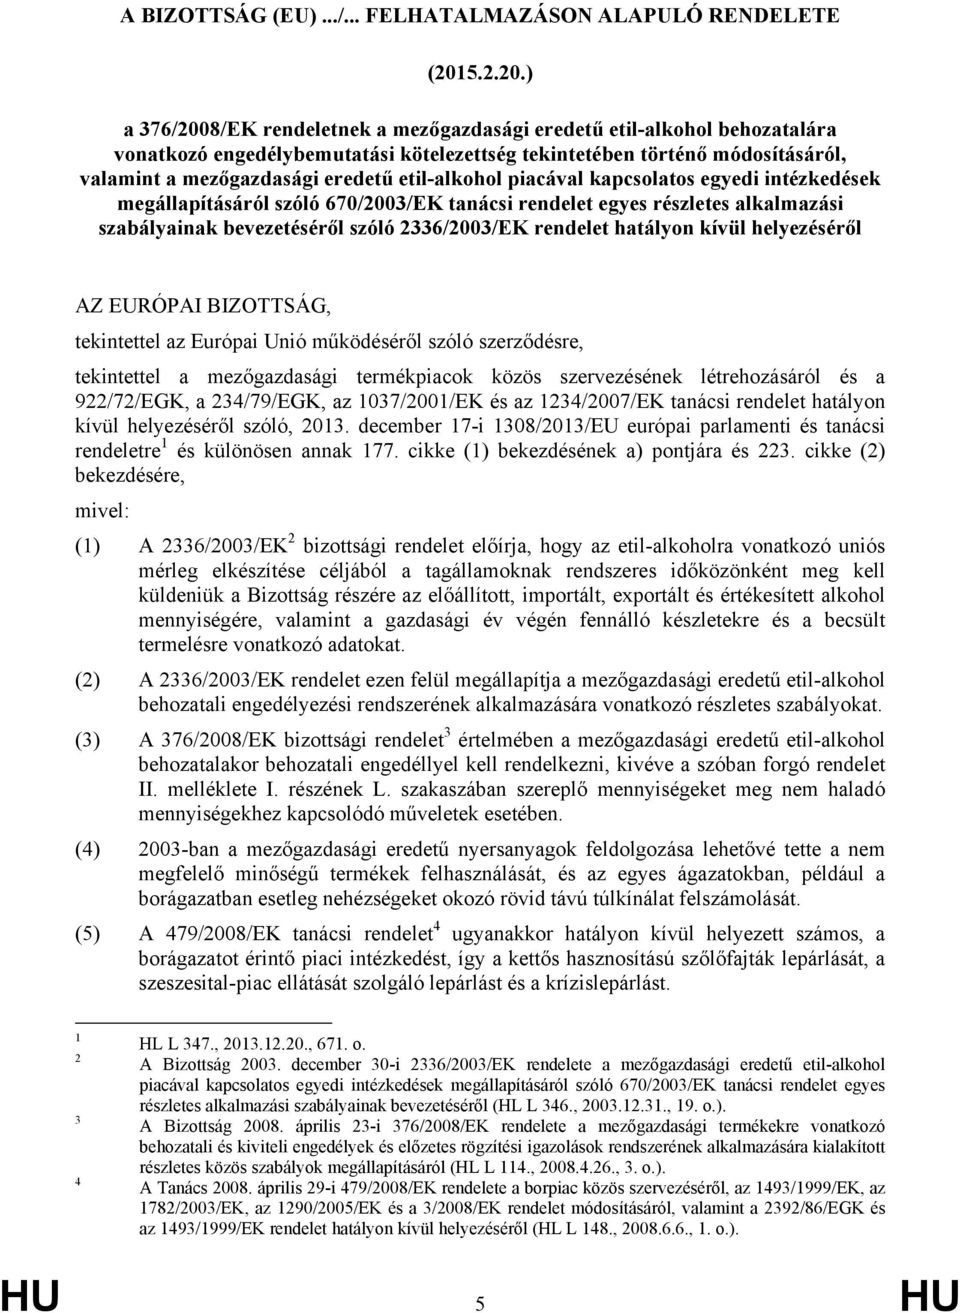 ) a 376/2008/EK rendeletnek a mezőgazdasági eredetű etil-alkohol behozatalára vonatkozó engedélybemutatási kötelezettség tekintetében történő módosításáról, valamint a mezőgazdasági eredetű